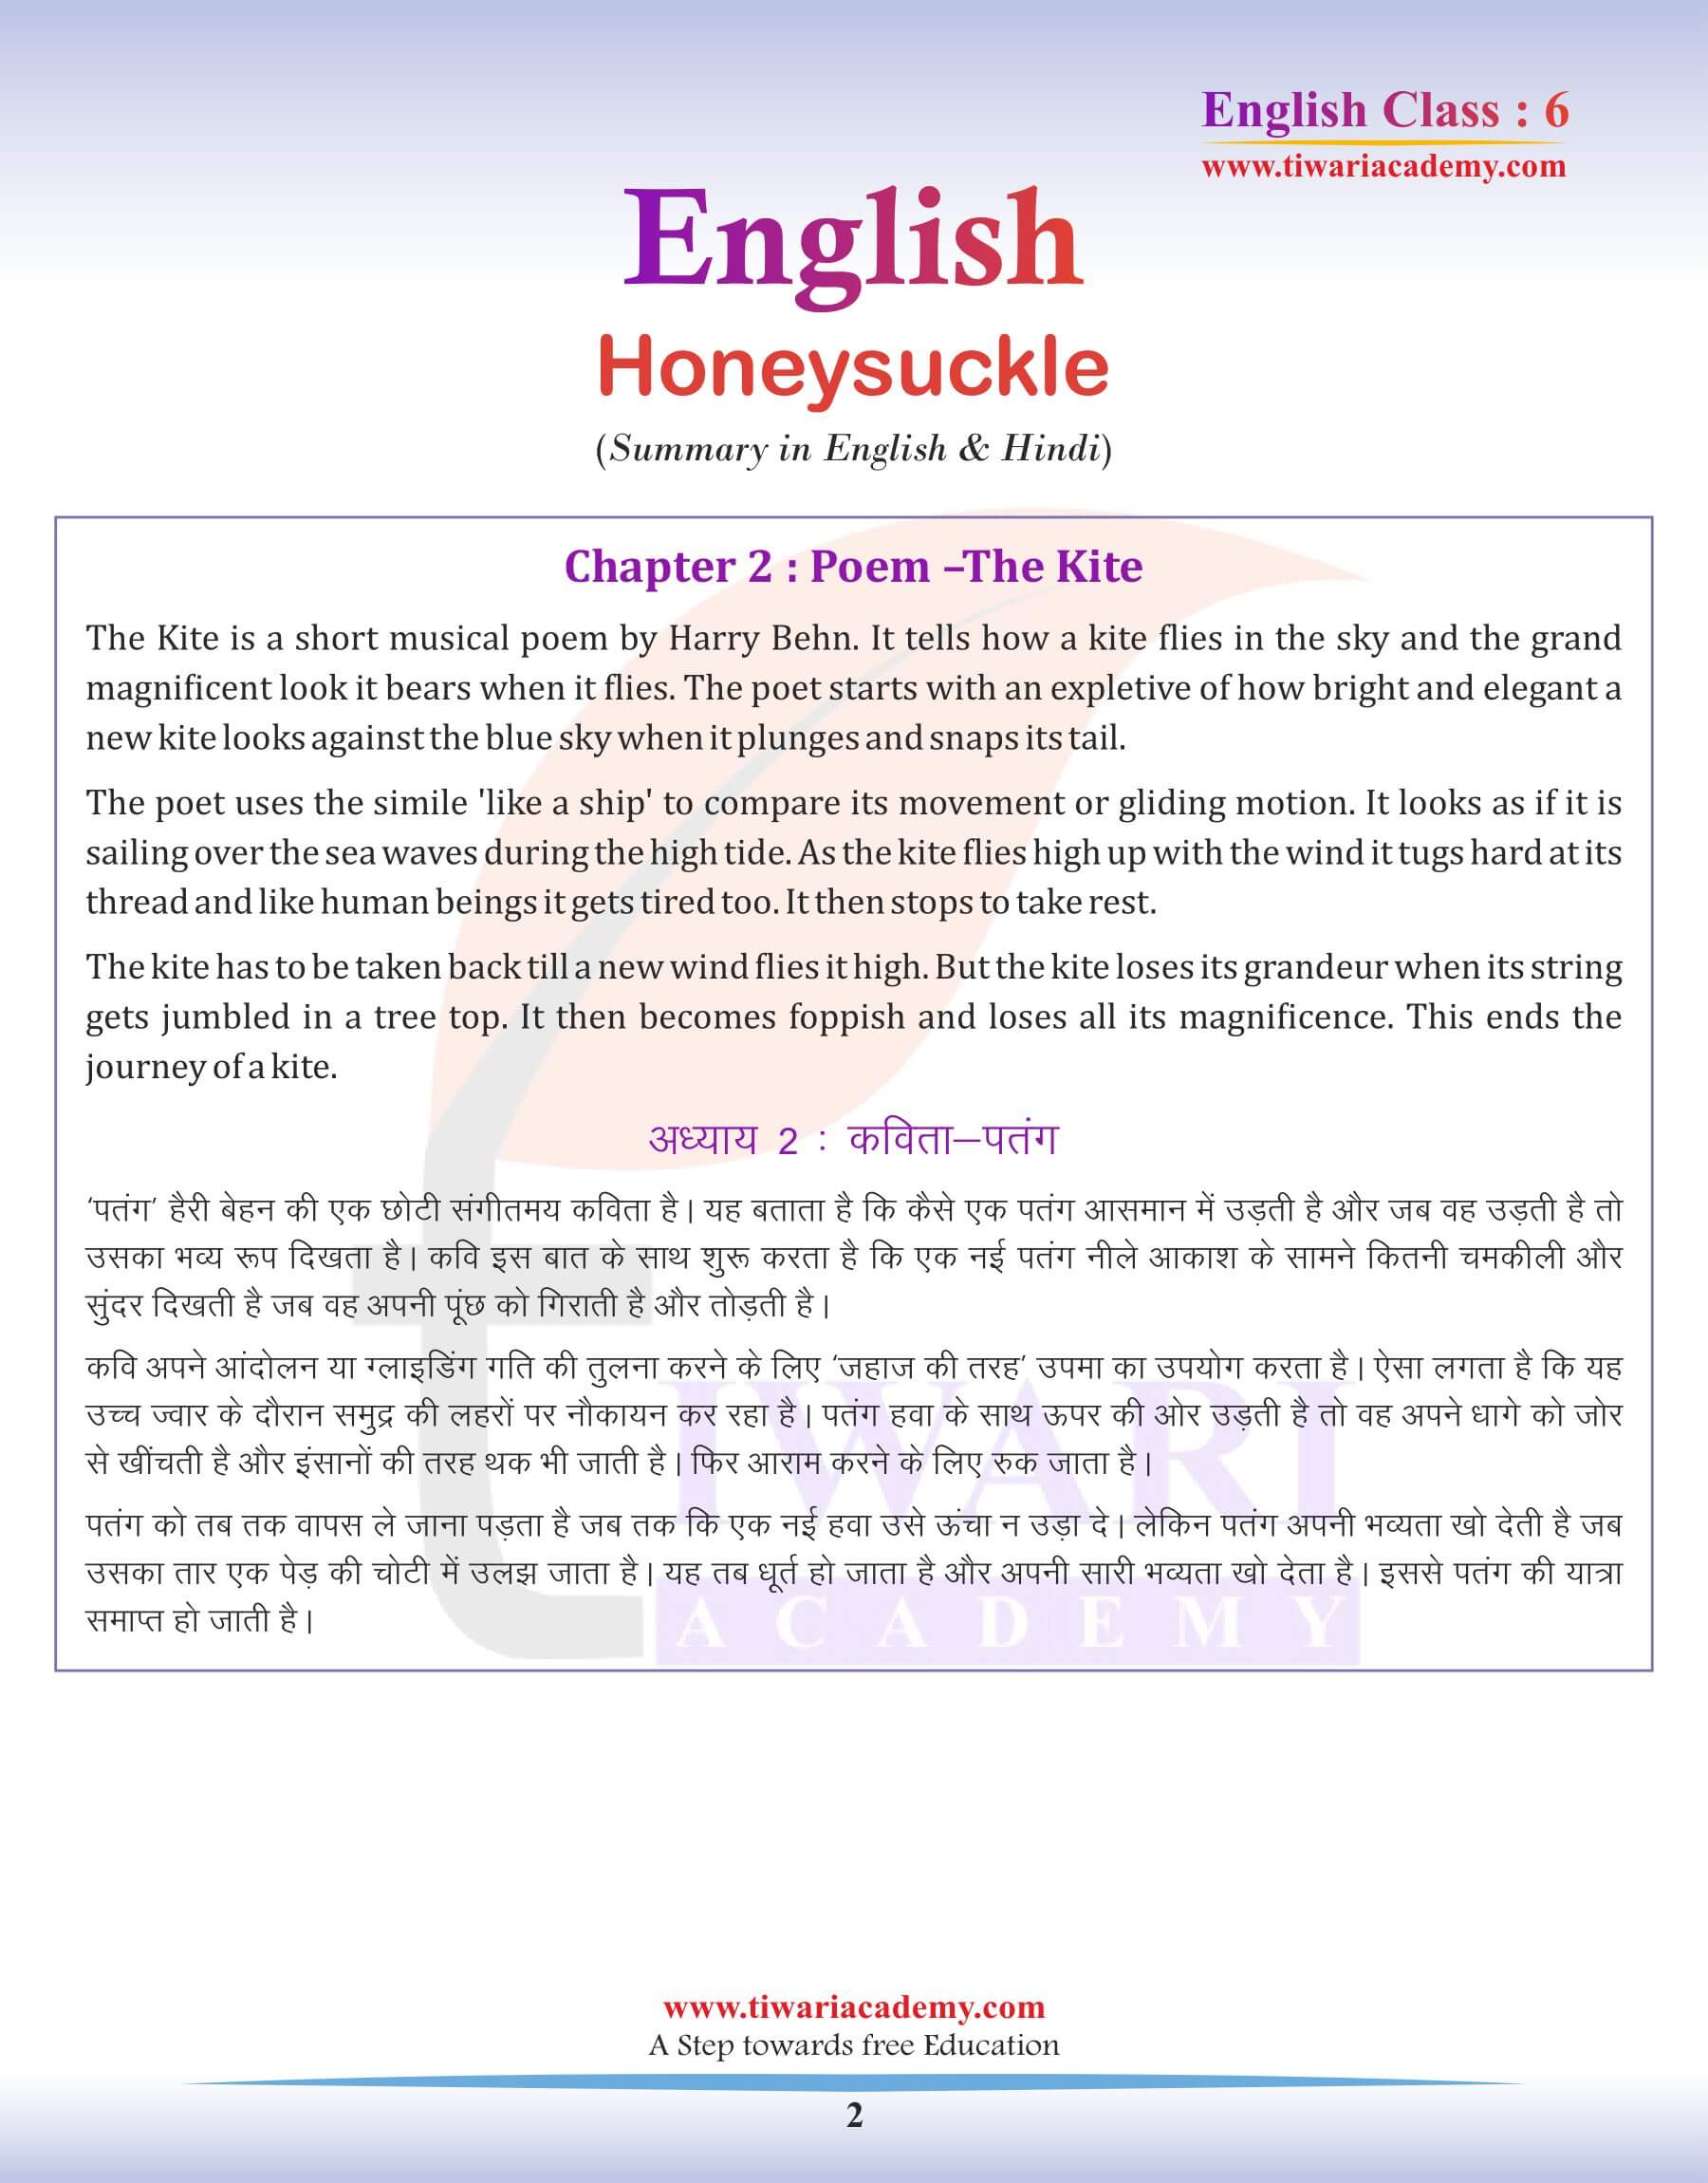 Class 6 English Poem 2: Summary in Hindi & English